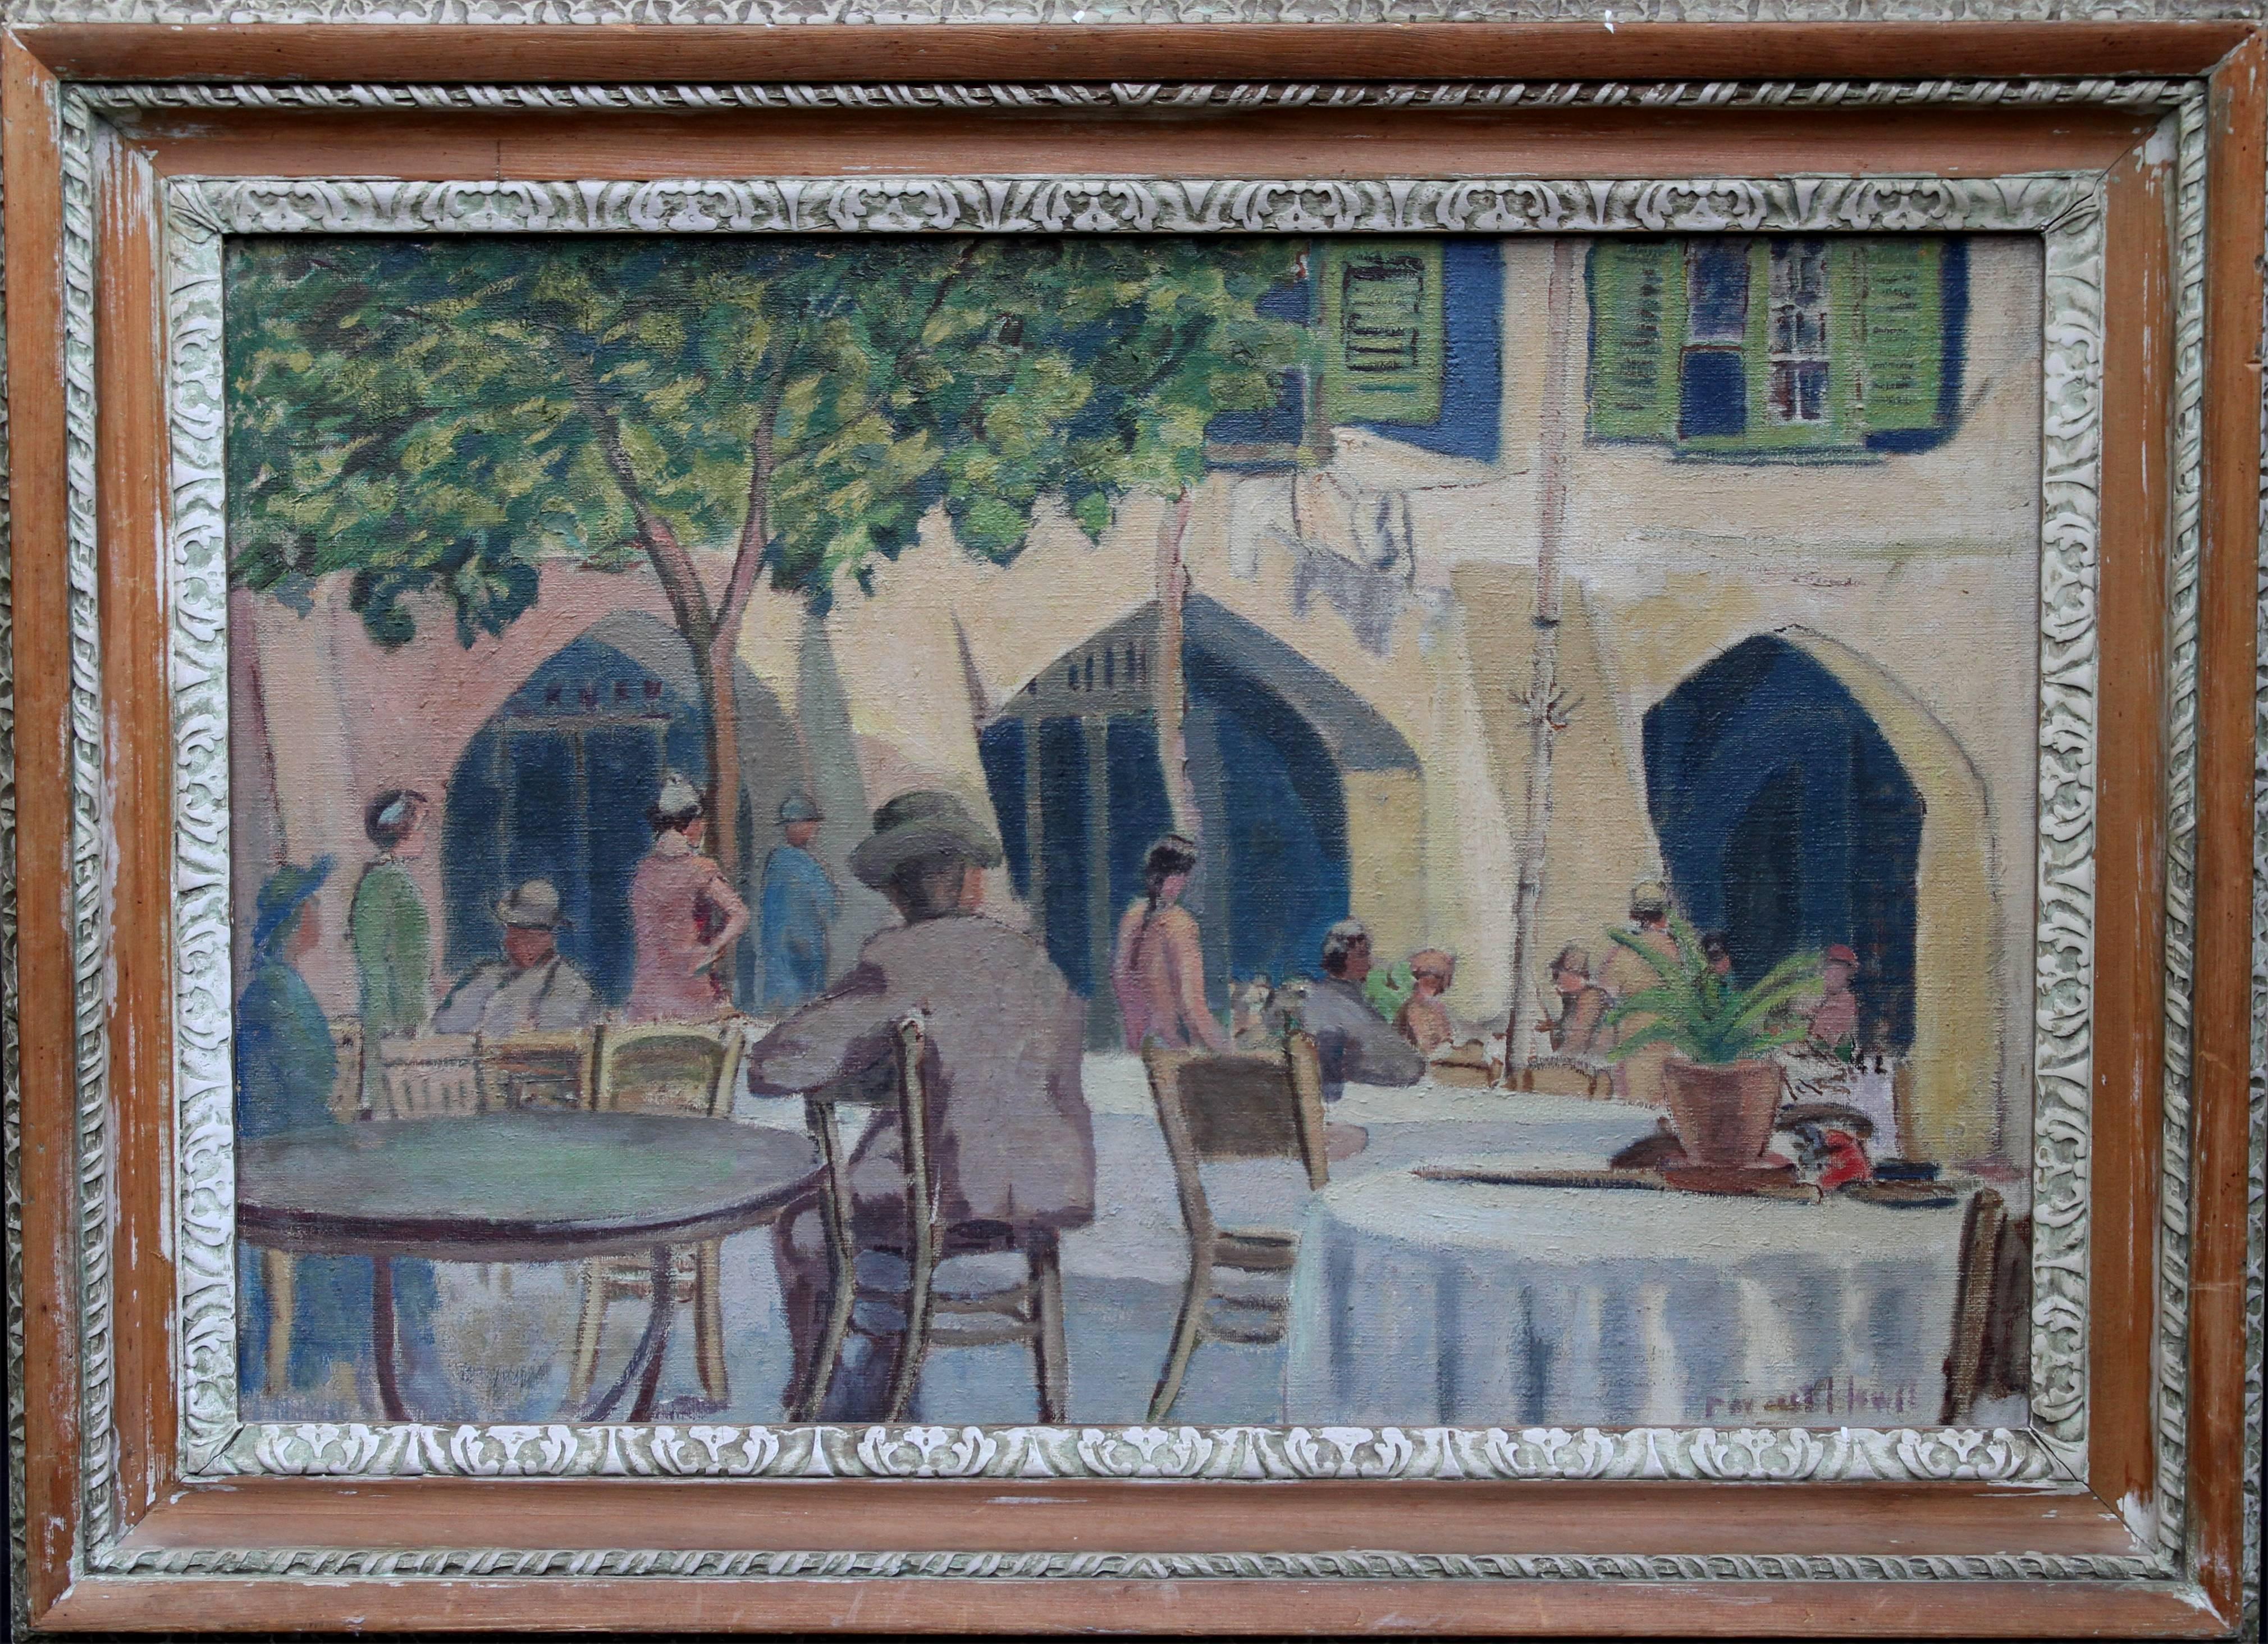 Figurative Painting Forrest Hewit - Cafe Porto Fino Italie - Peinture à l'huile post-impressionniste britannique - Côte d'Azur italienne